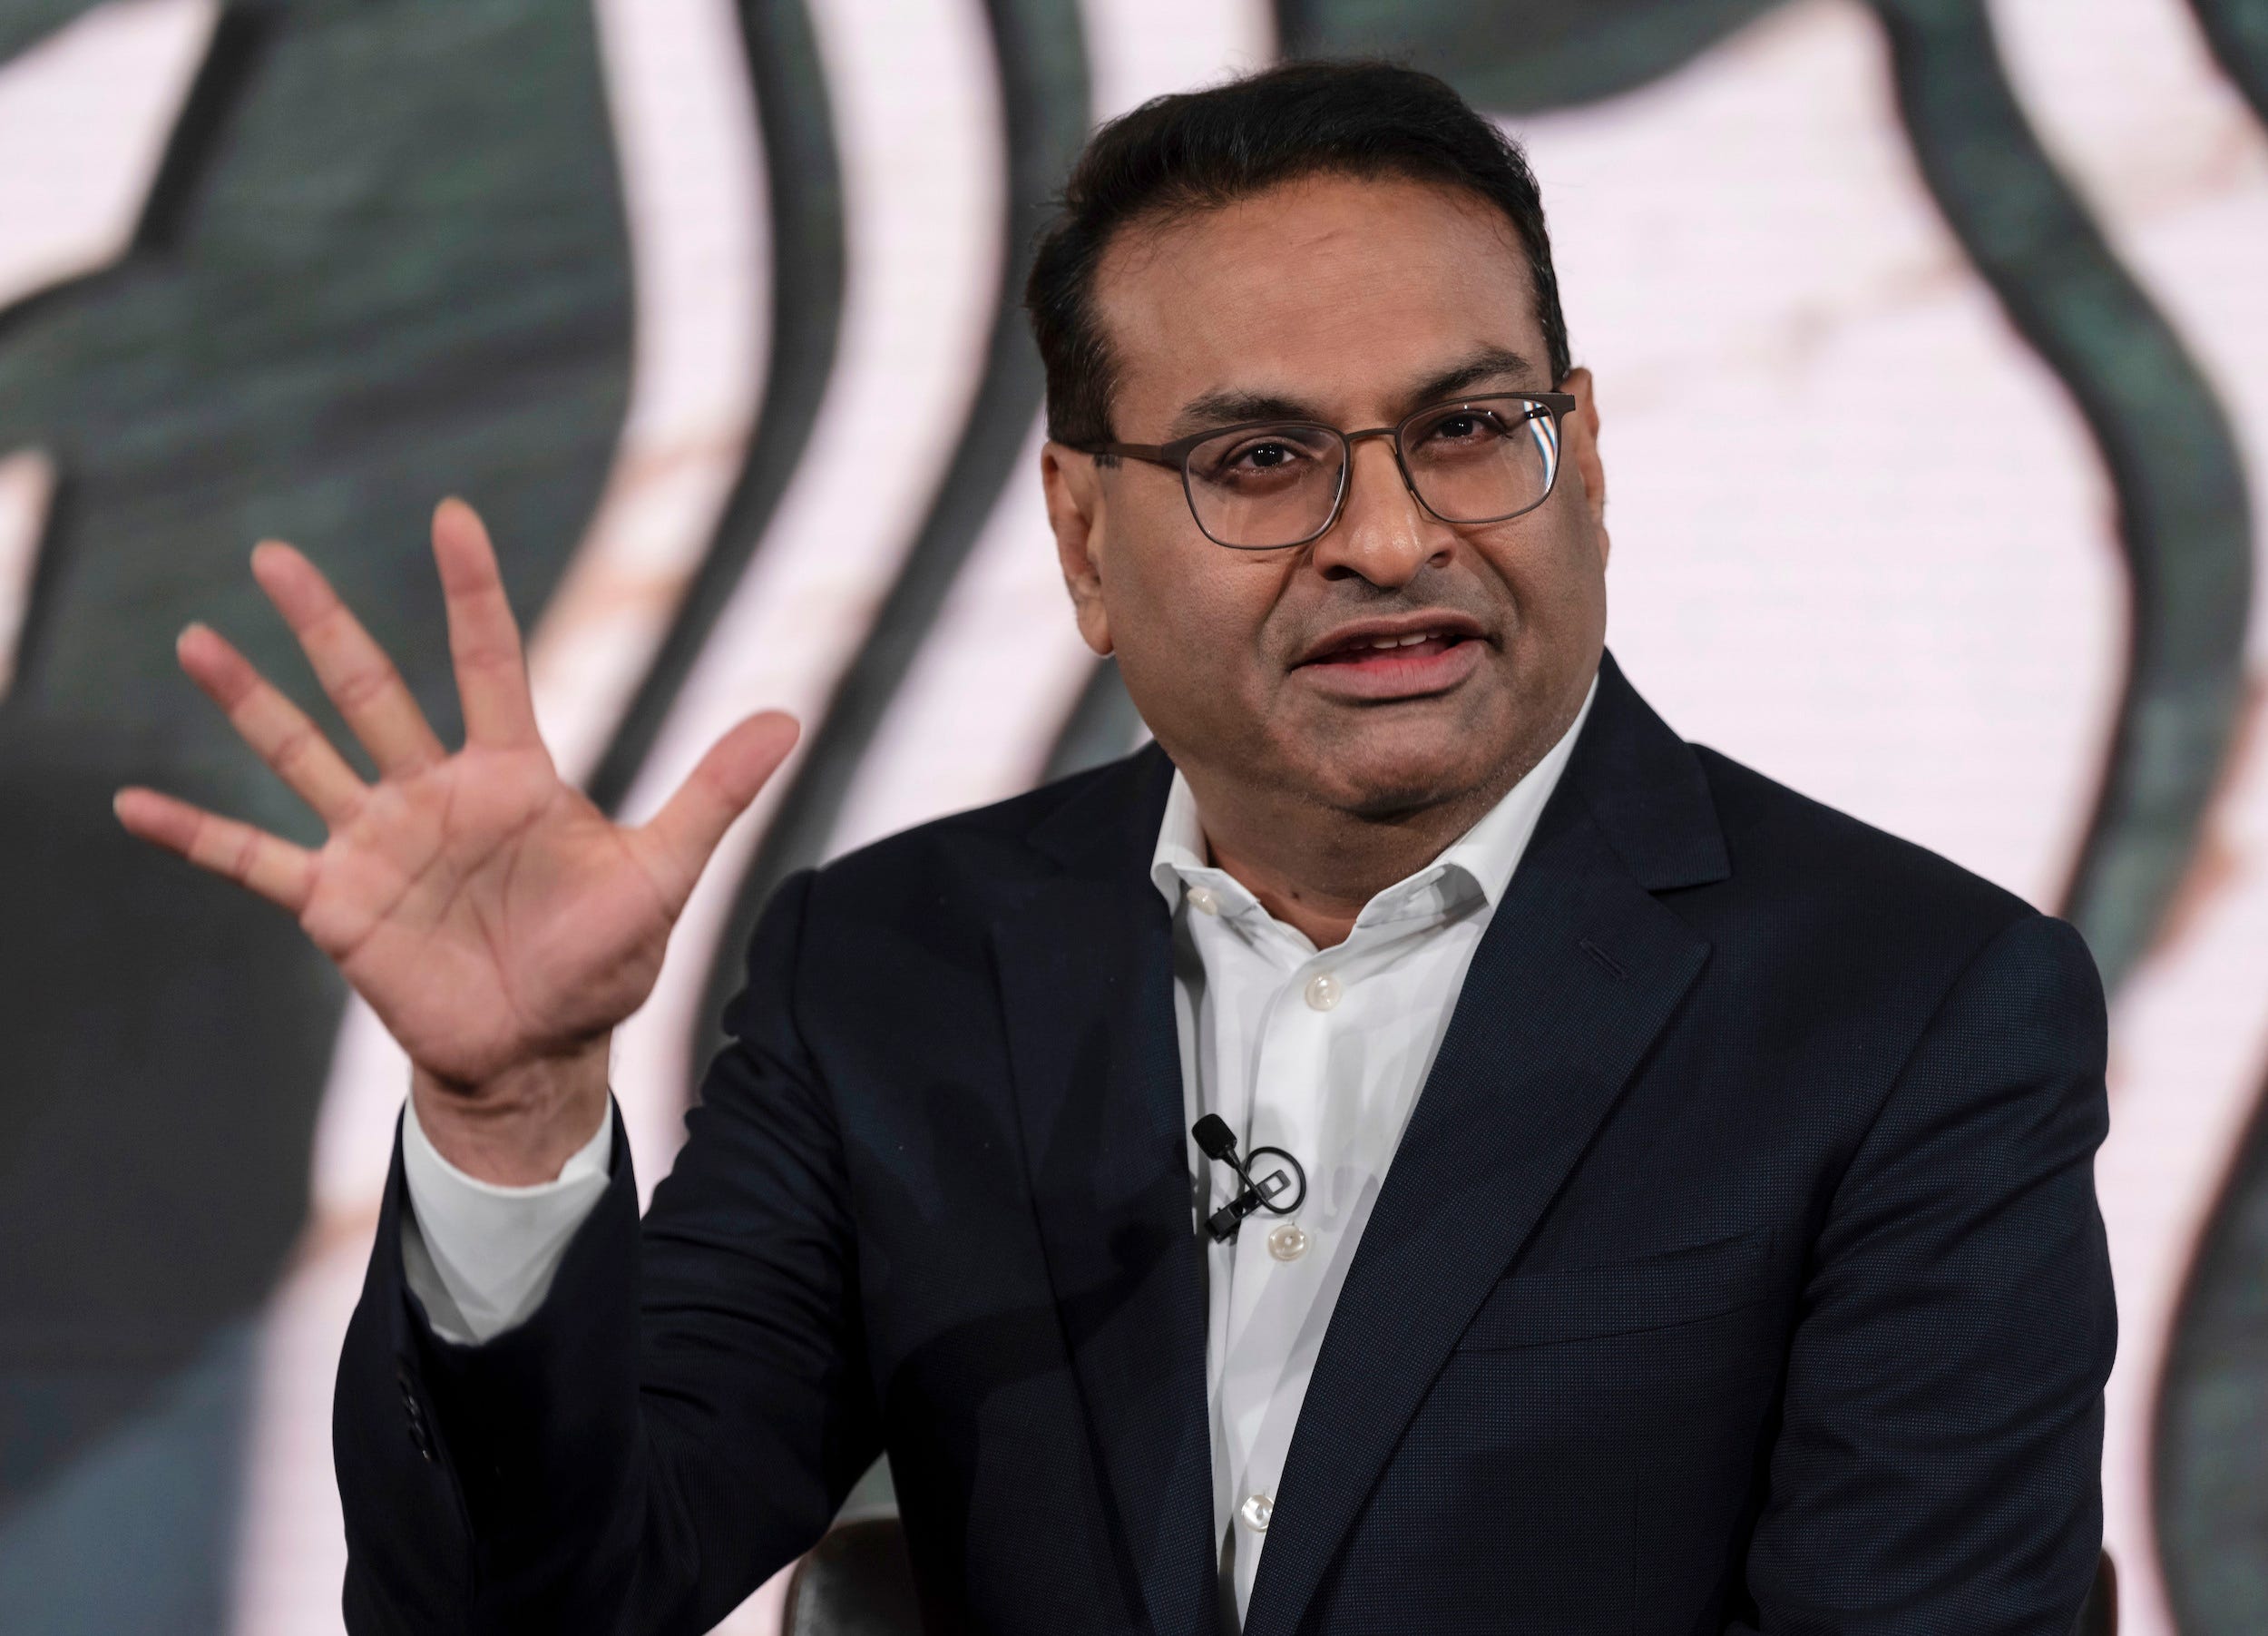 Laxman Narasimhan, der neue CEO von Starbucks, hält die Hand hoch, während er auf der Bühne spricht